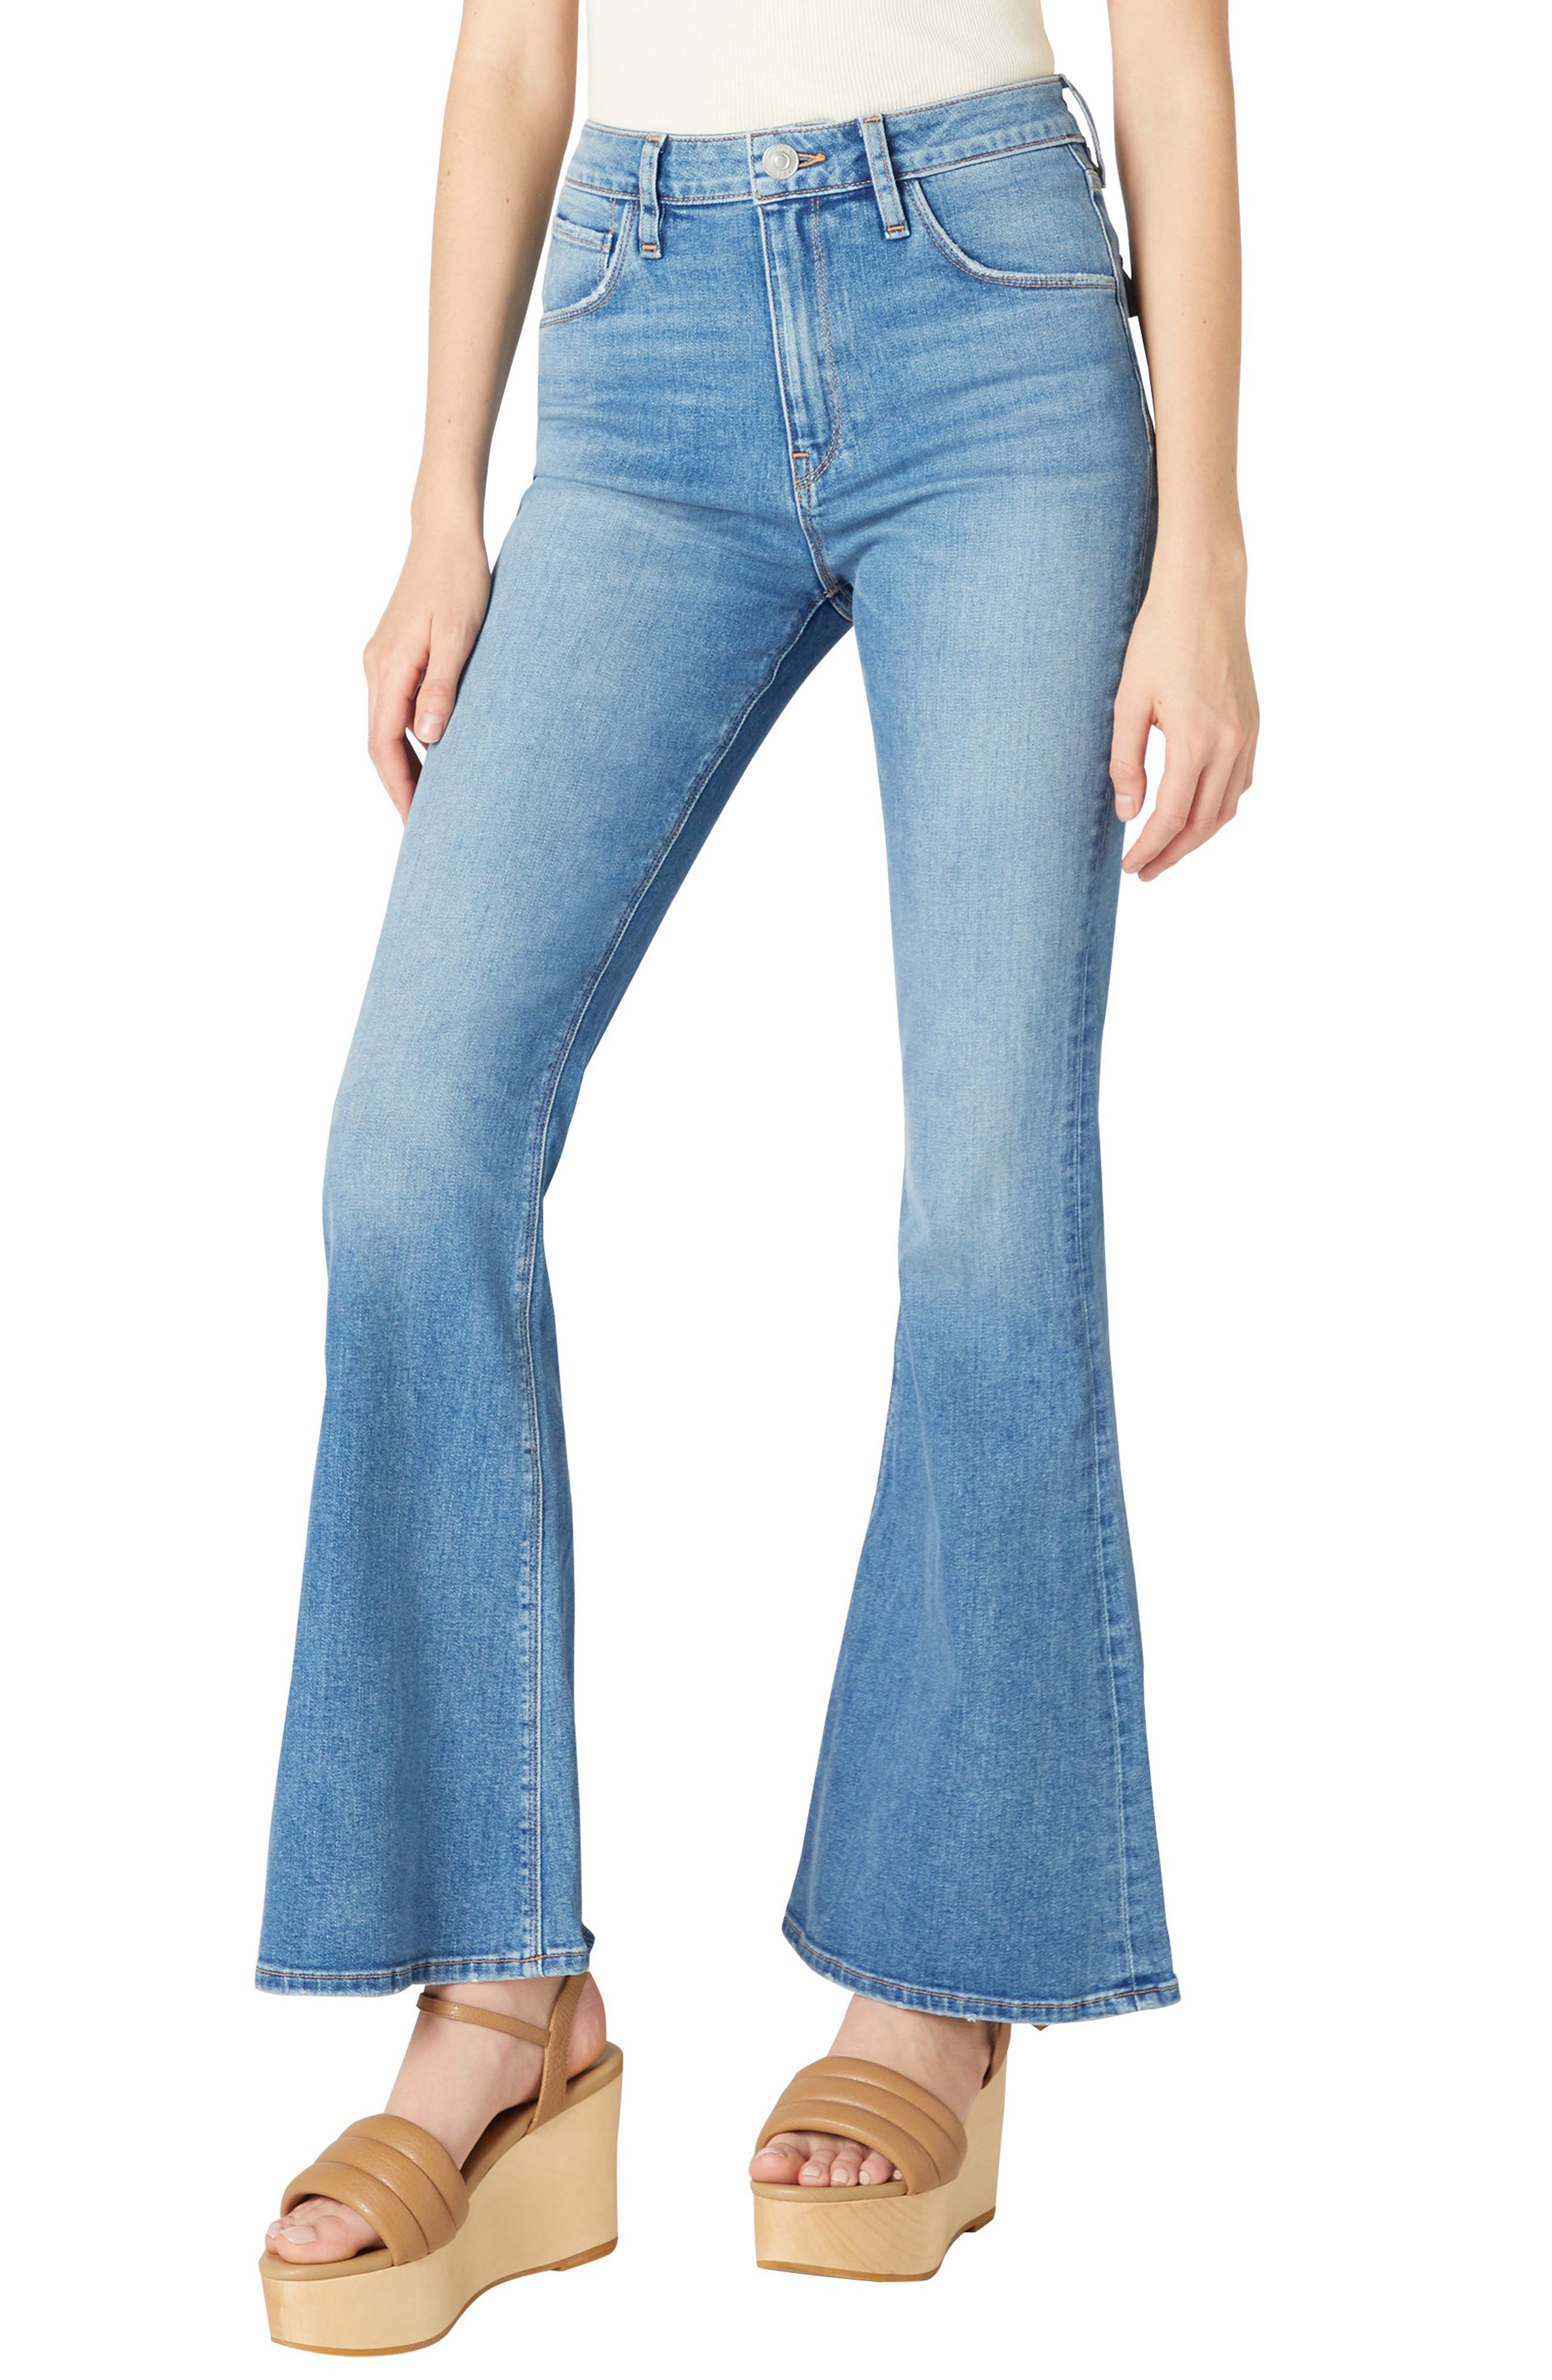 Джинсы Расклешенные джинсы Holly с высокой талией и клапаном с карманом Hudson